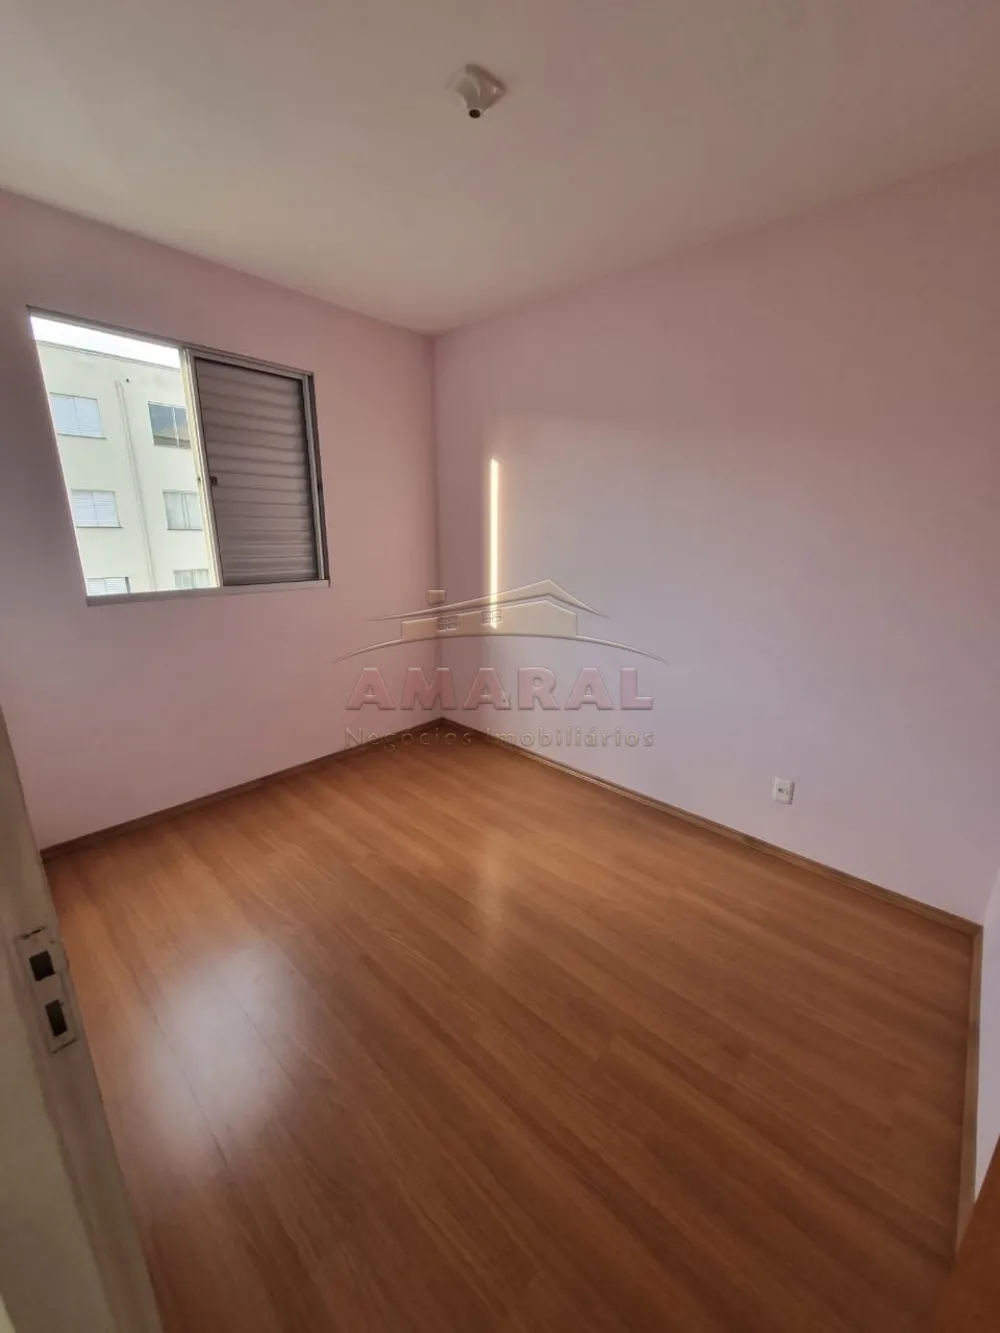 Alugar Apartamentos / Padrão em Suzano R$ 580,00 - Foto 10